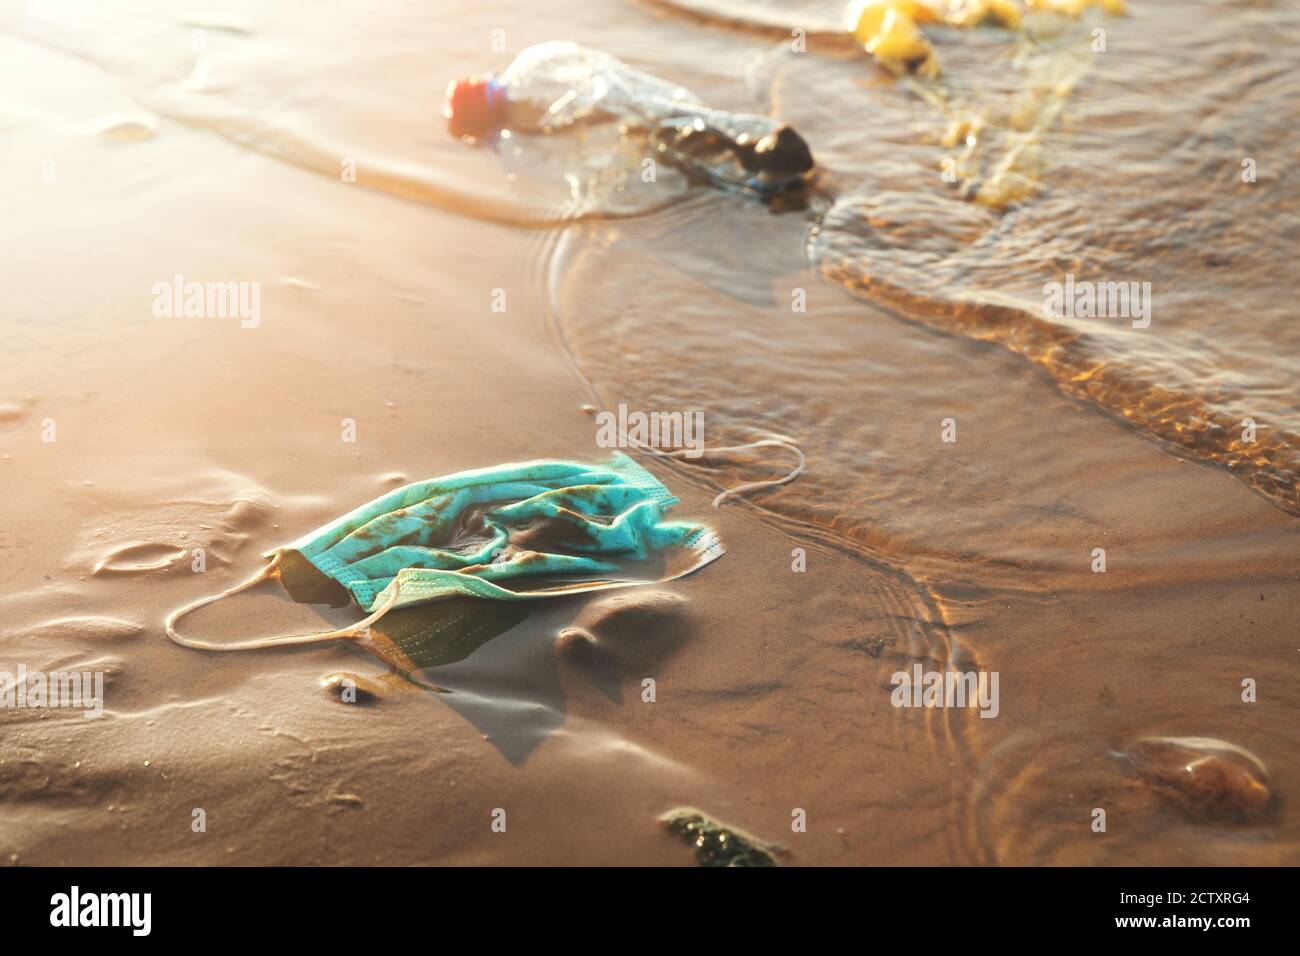 maschera medica e rifiuti di plastica nelle acque della costa marittima. inquinamento ambientale da coronavirus covid-19 pandemia Foto Stock